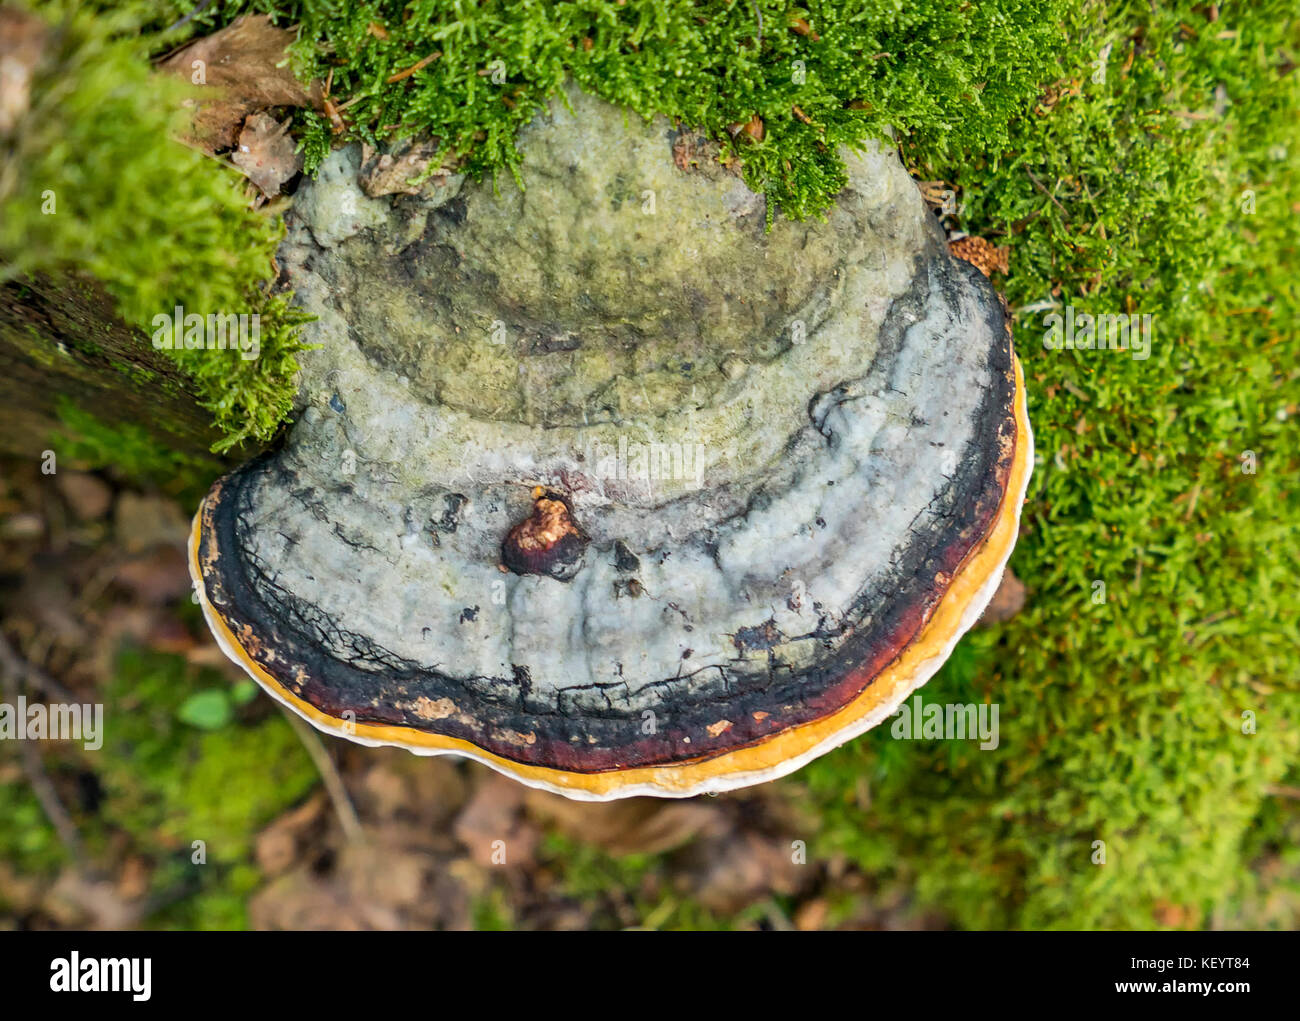 Dettaglio shot che mostra un fungo tinder visto da sopra Foto Stock